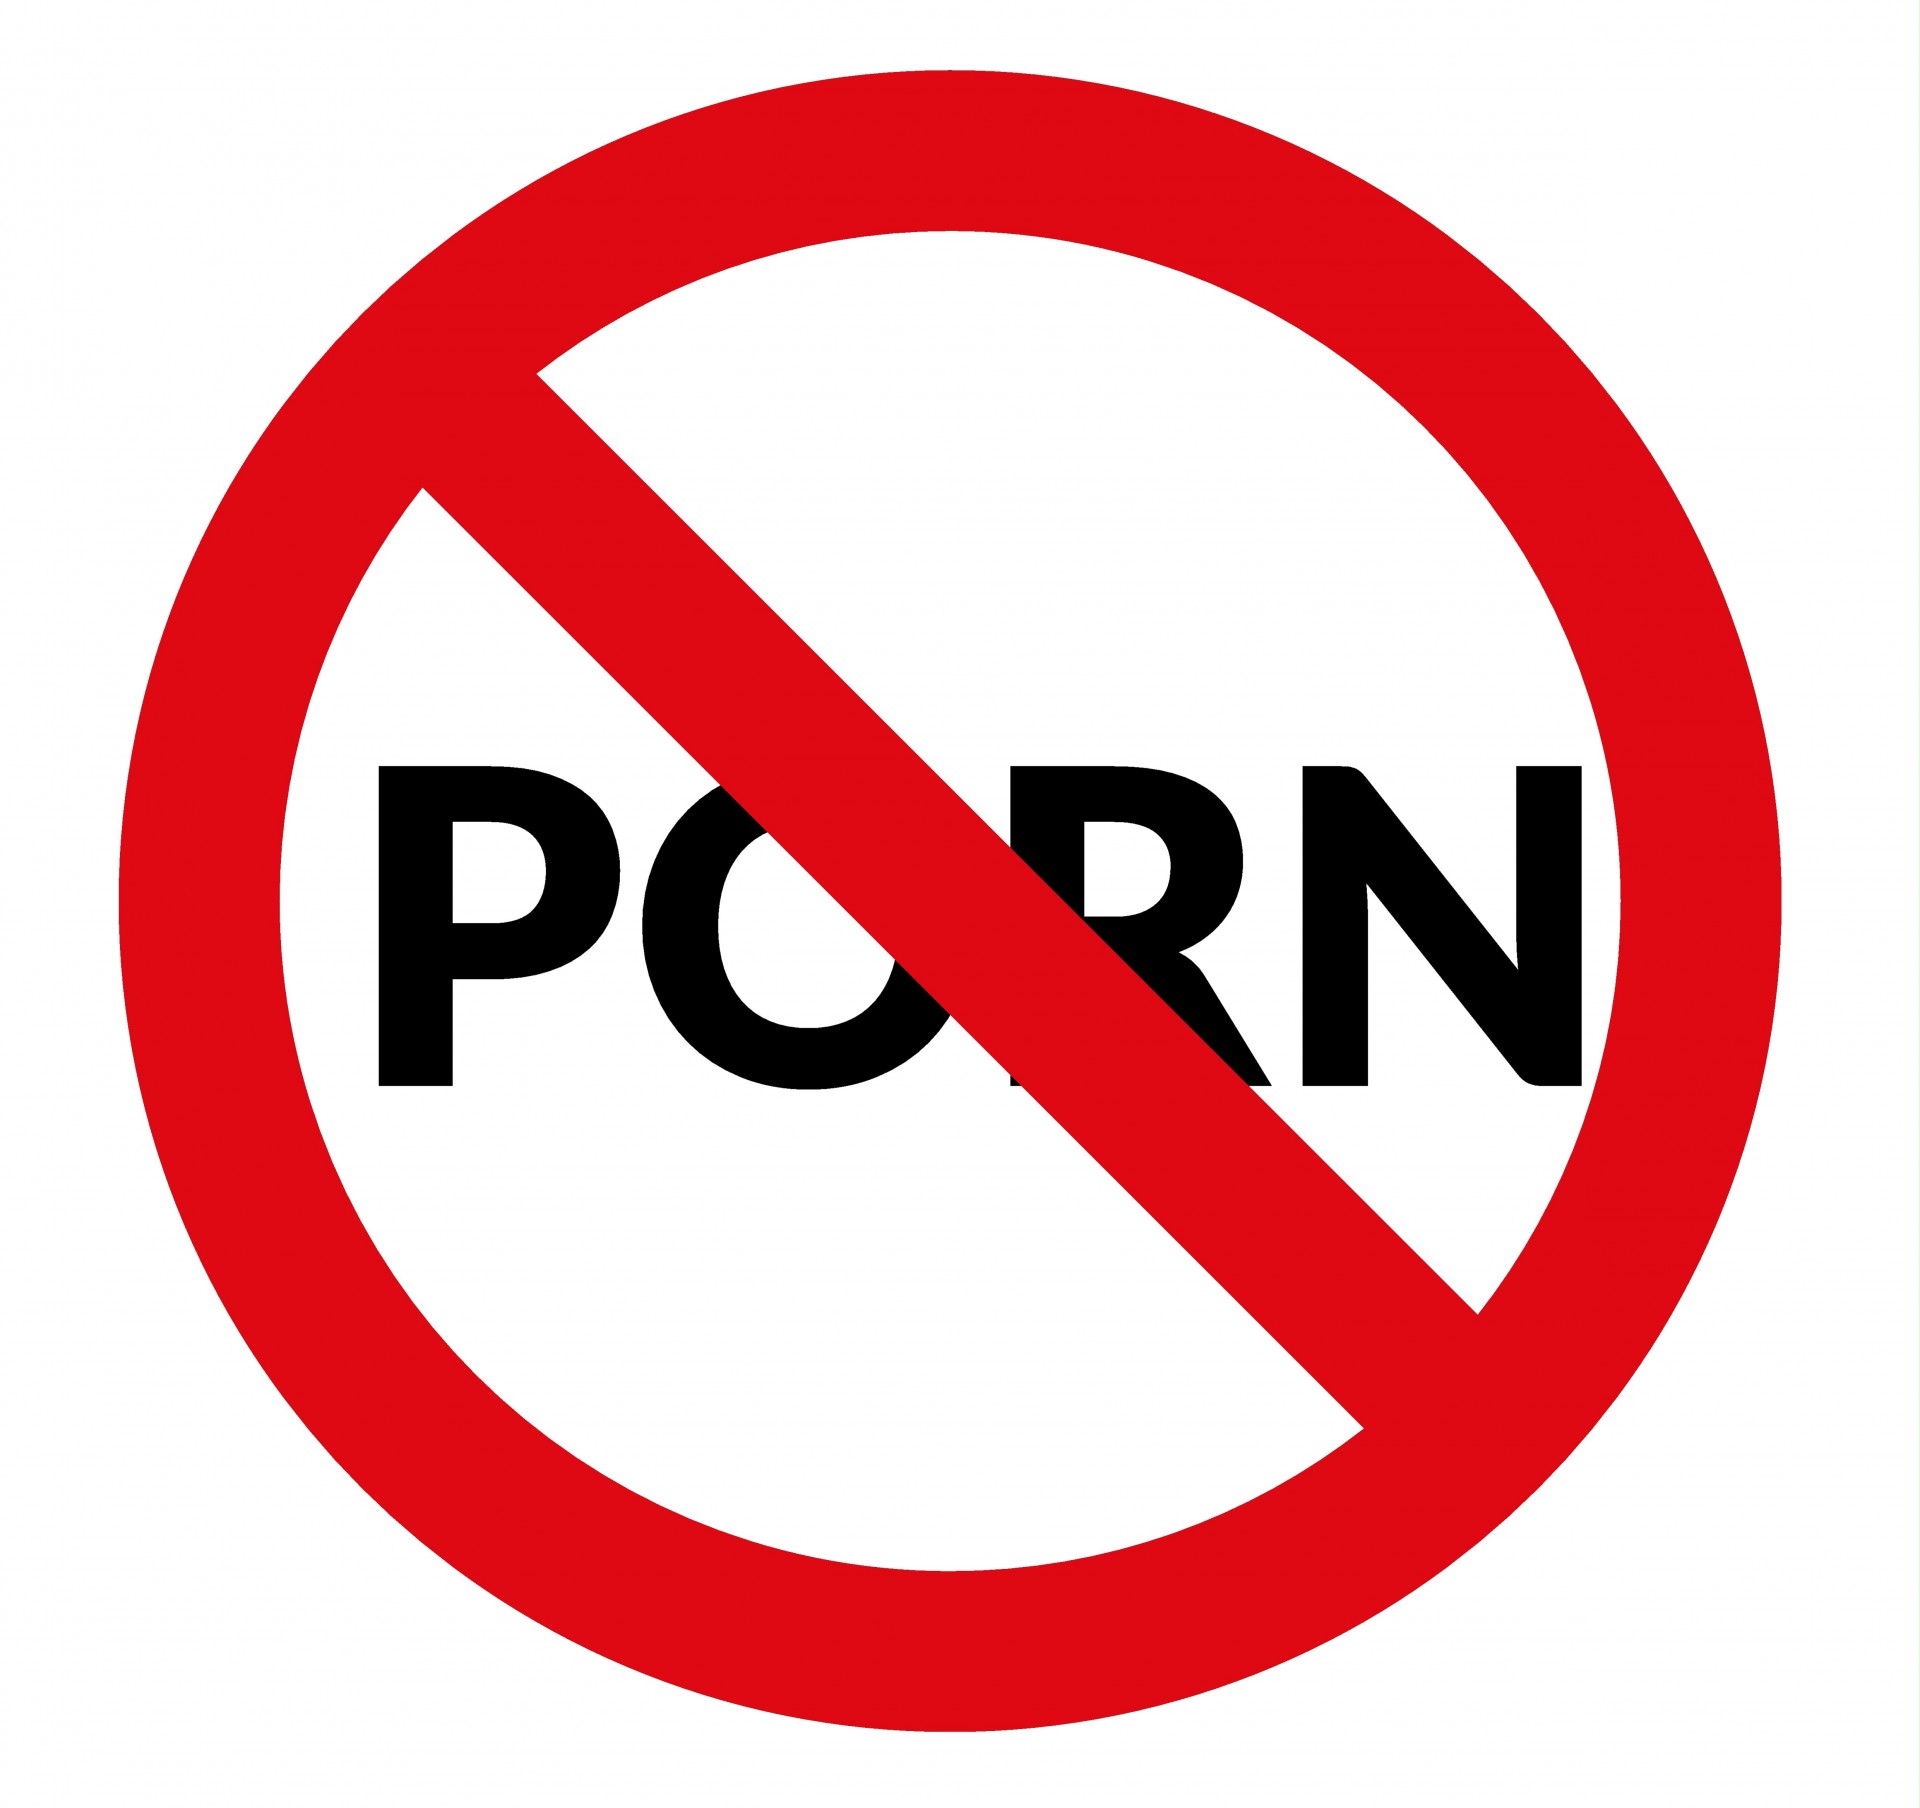 No Porn - Warning Sign